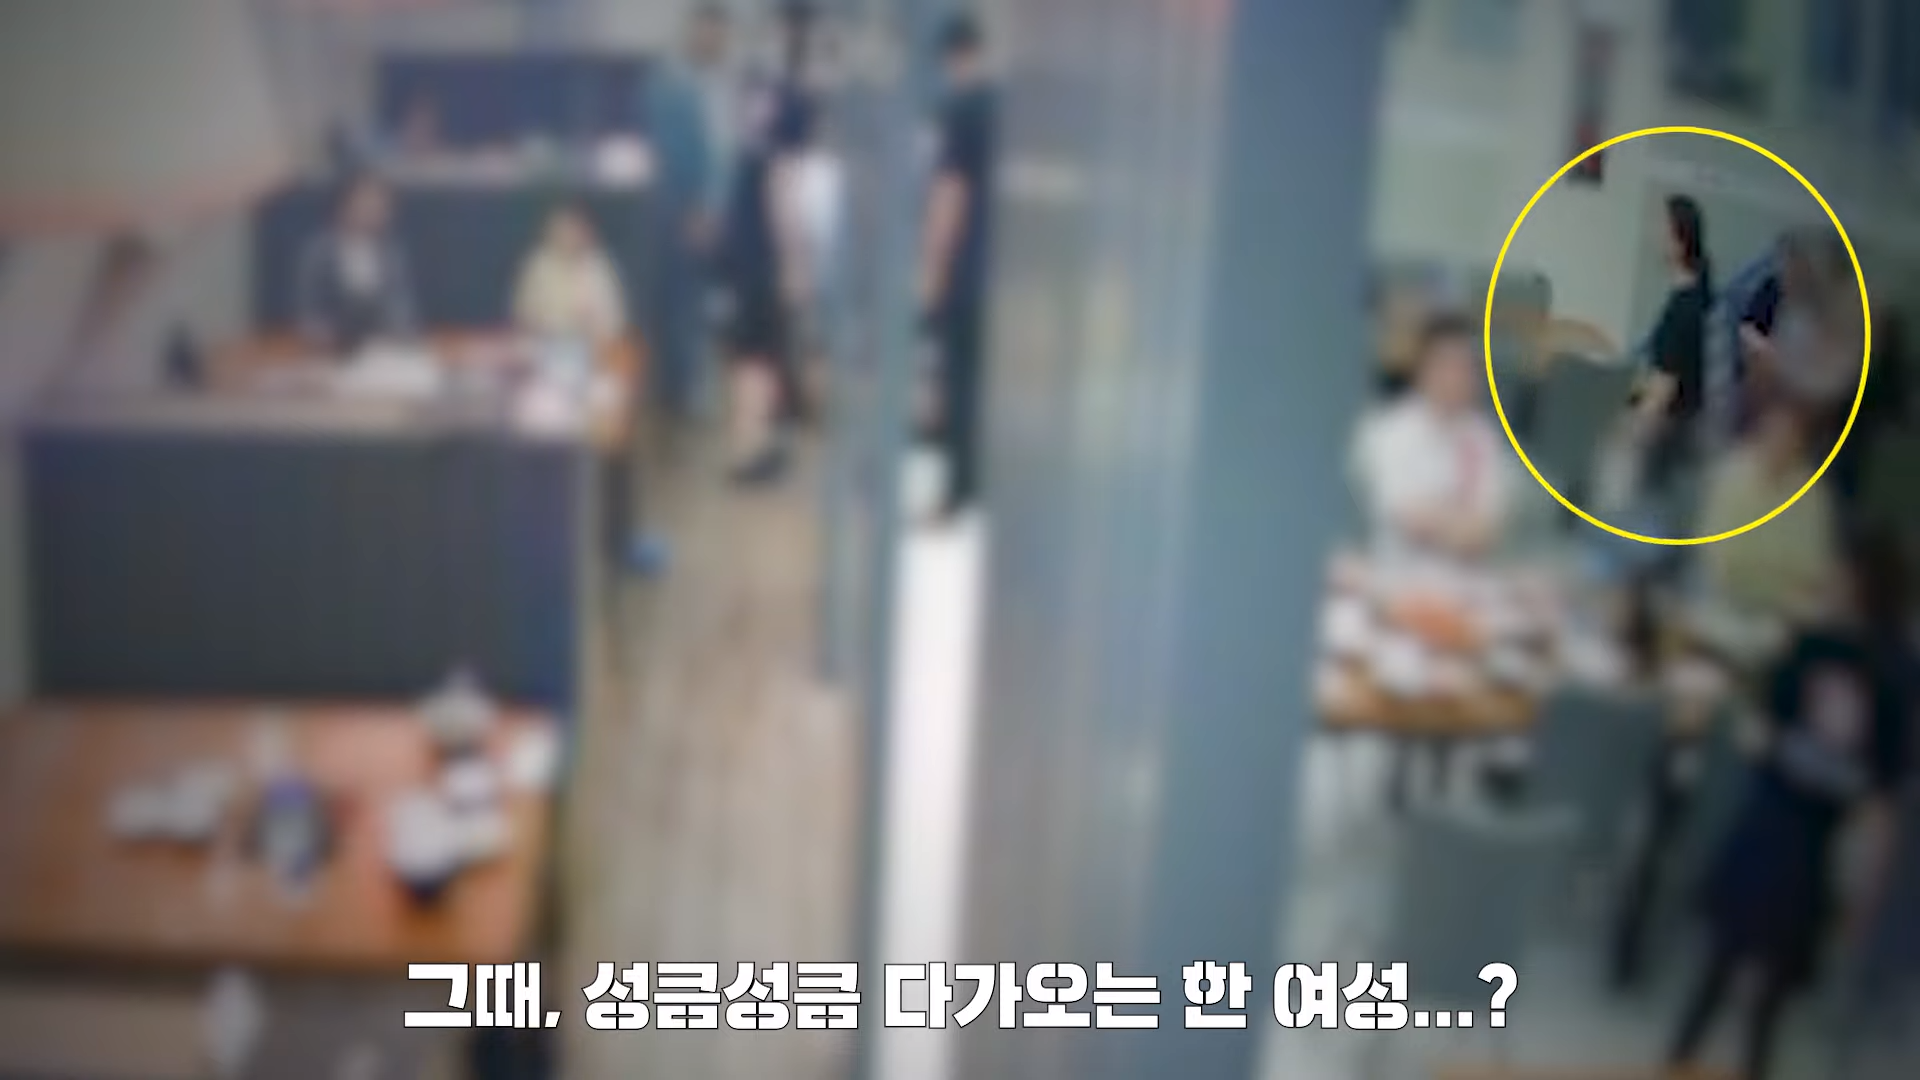 지난달 22일 서울 영등포구 식당에서 한 남성이 급체 증상을 보이며 쓰러지자 서울 관악경찰서 소속 홍도연 경장이 심폐소생술(CPR)을 실시했다. 경찰청 유튜브